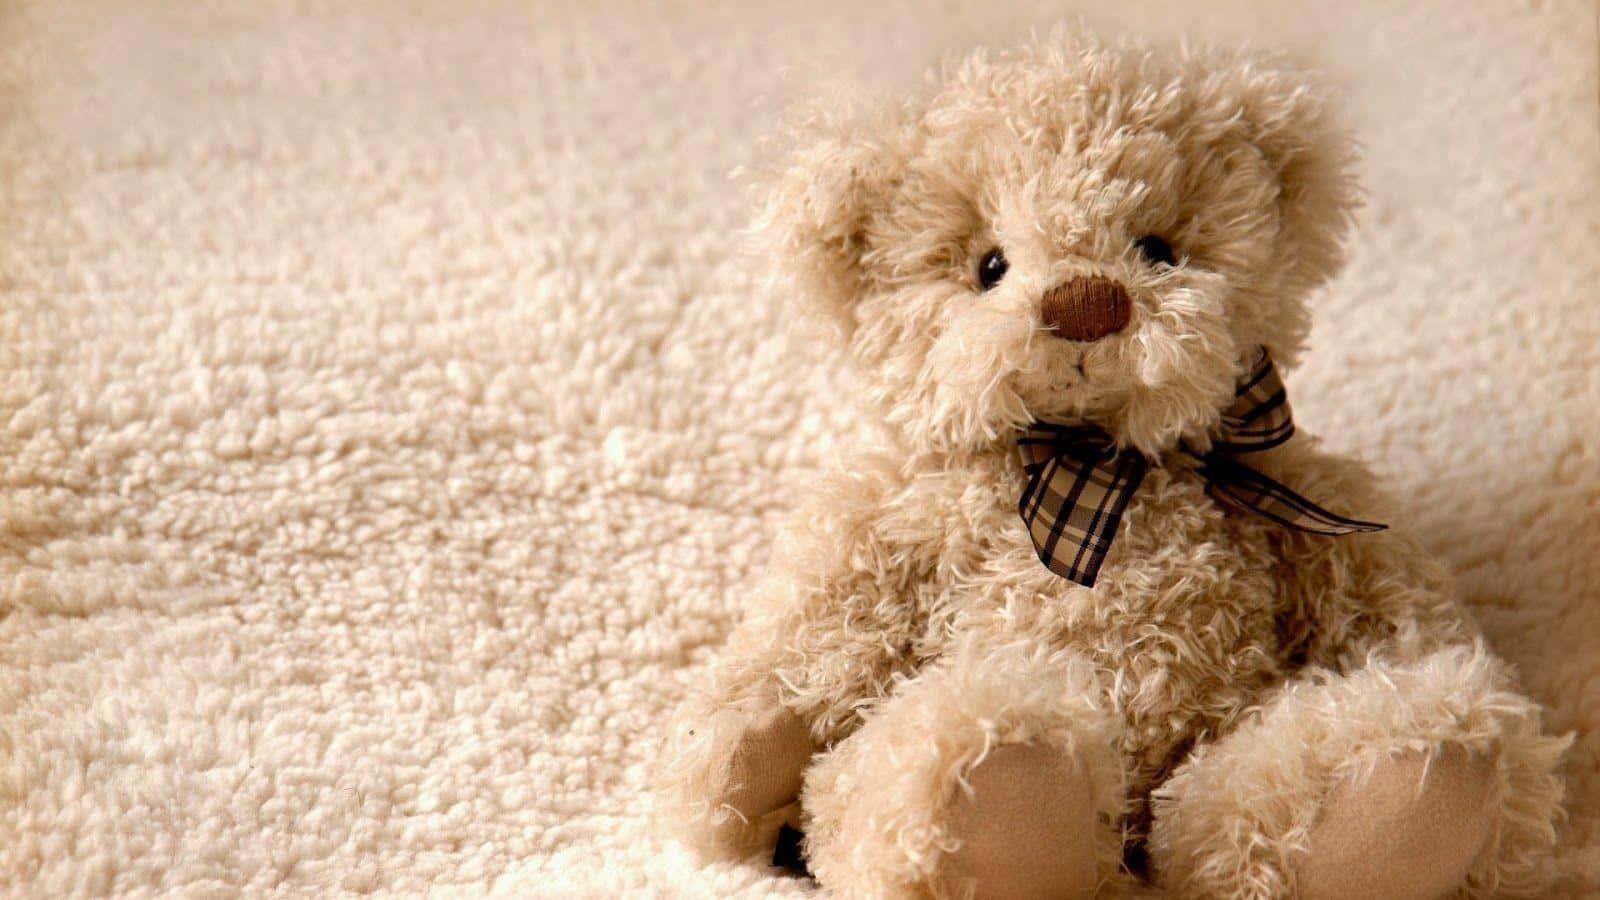 A sweet and cuddly teddy bear